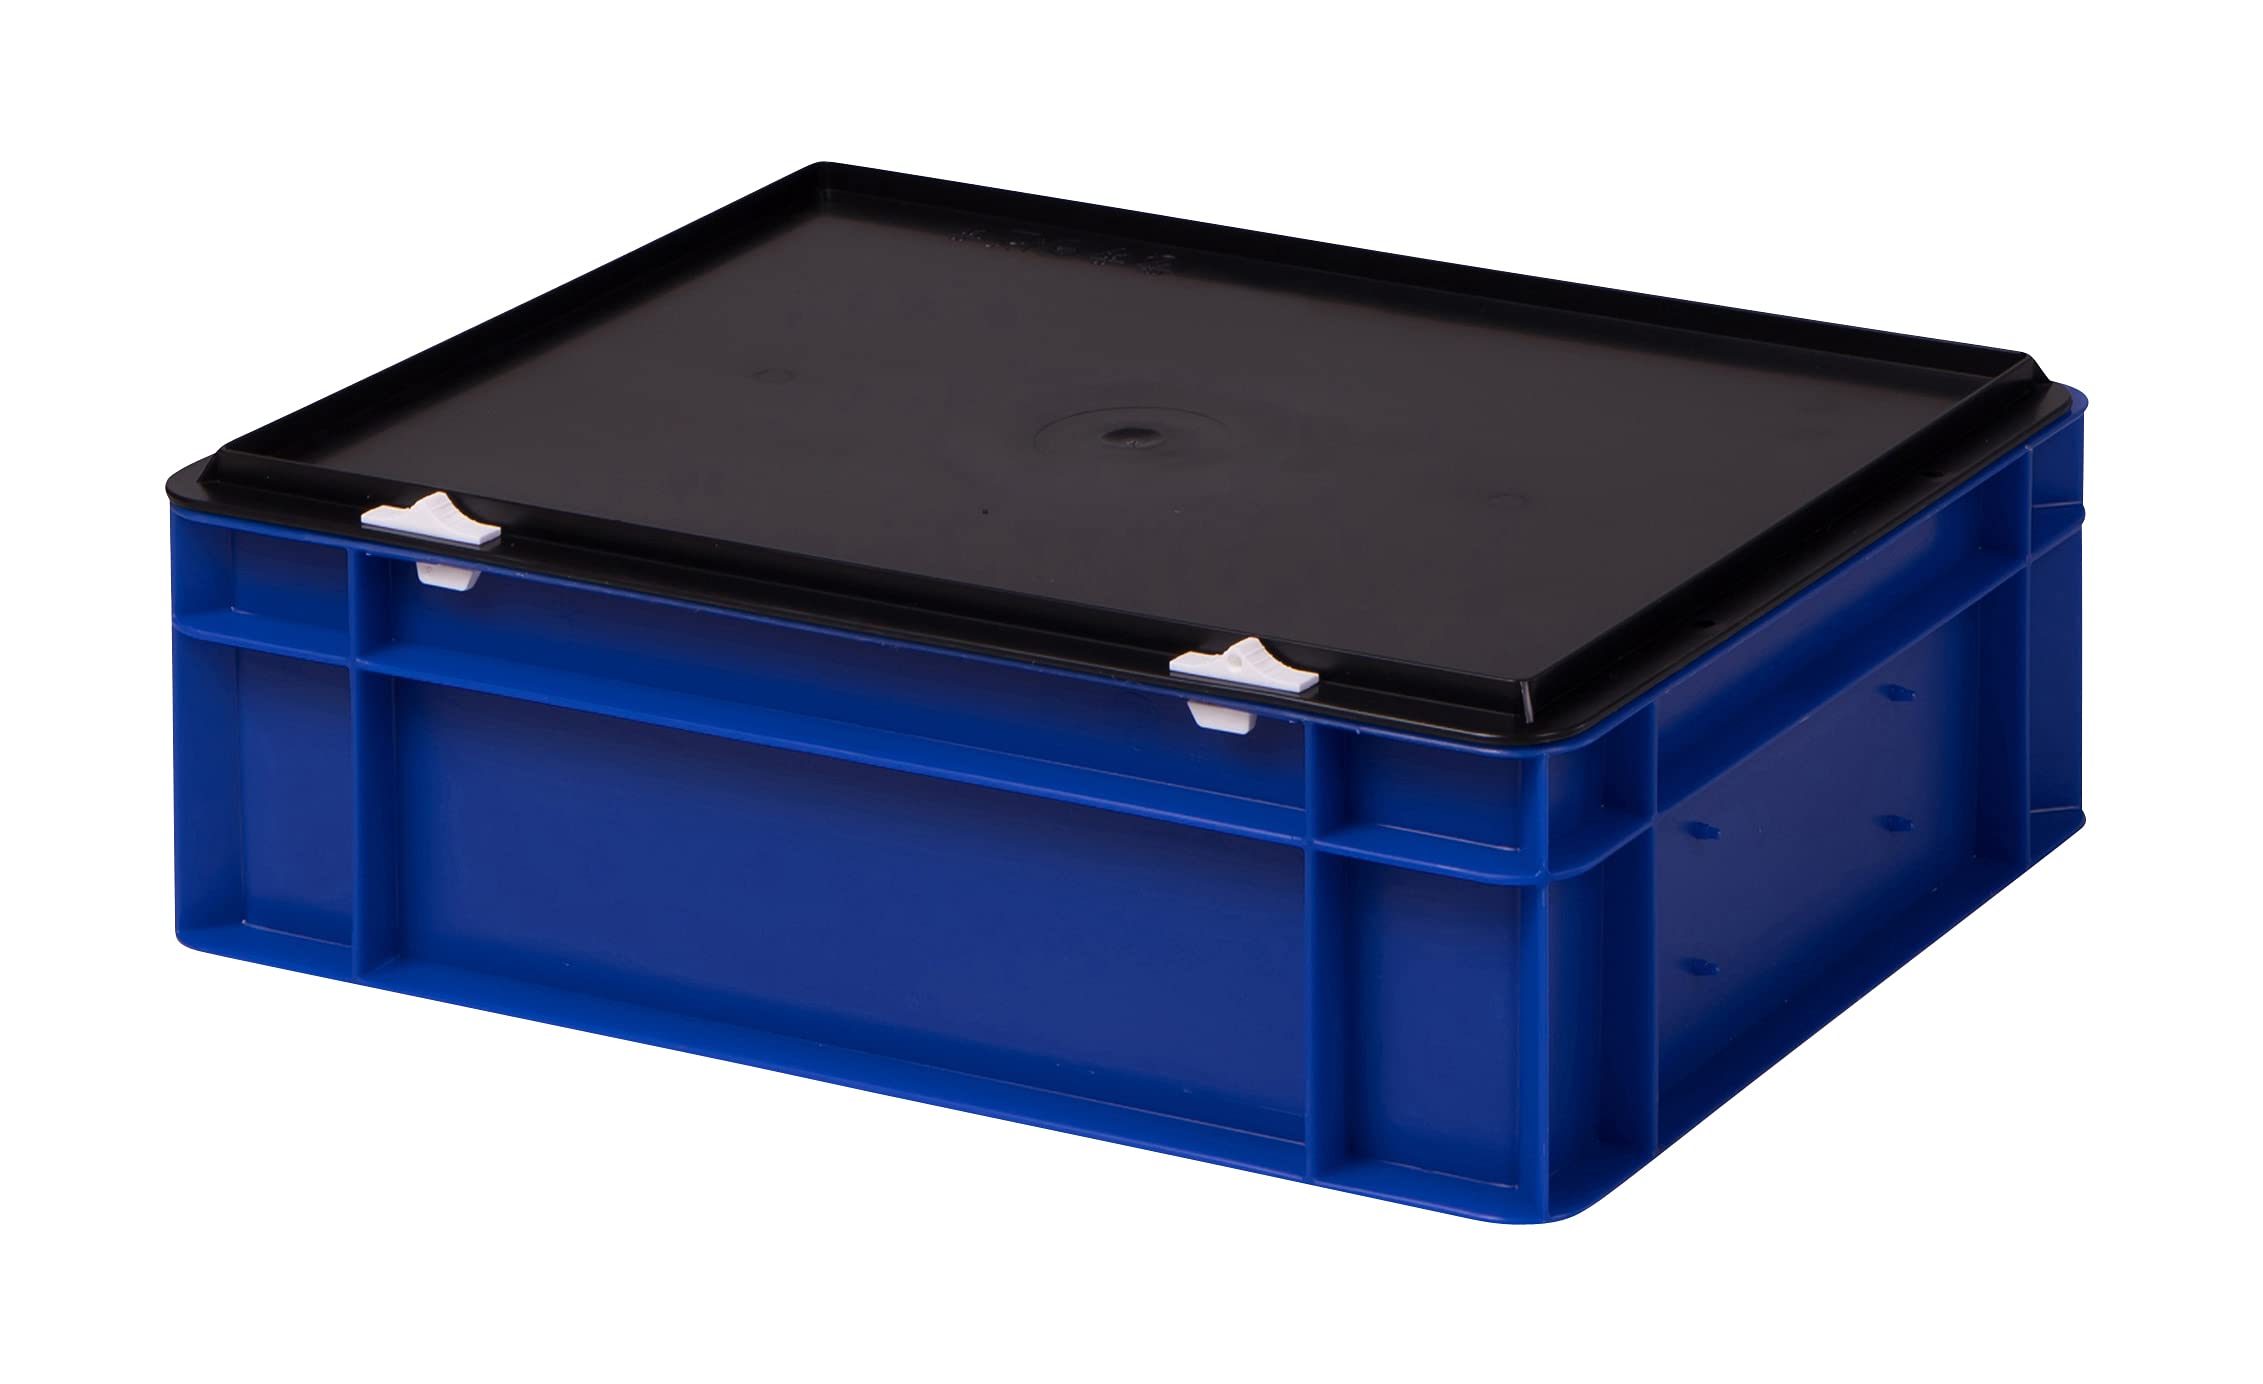 1a-TopStore Stabile Profi Aufbewahrungsbox Stapelbox Eurobox Stapelkiste mit Deckel, Kunststoffkiste lieferbar in 5 Farben und 21 Größen für Industrie, Gewerbe, Haushalt (blau, 40x30x13 cm)